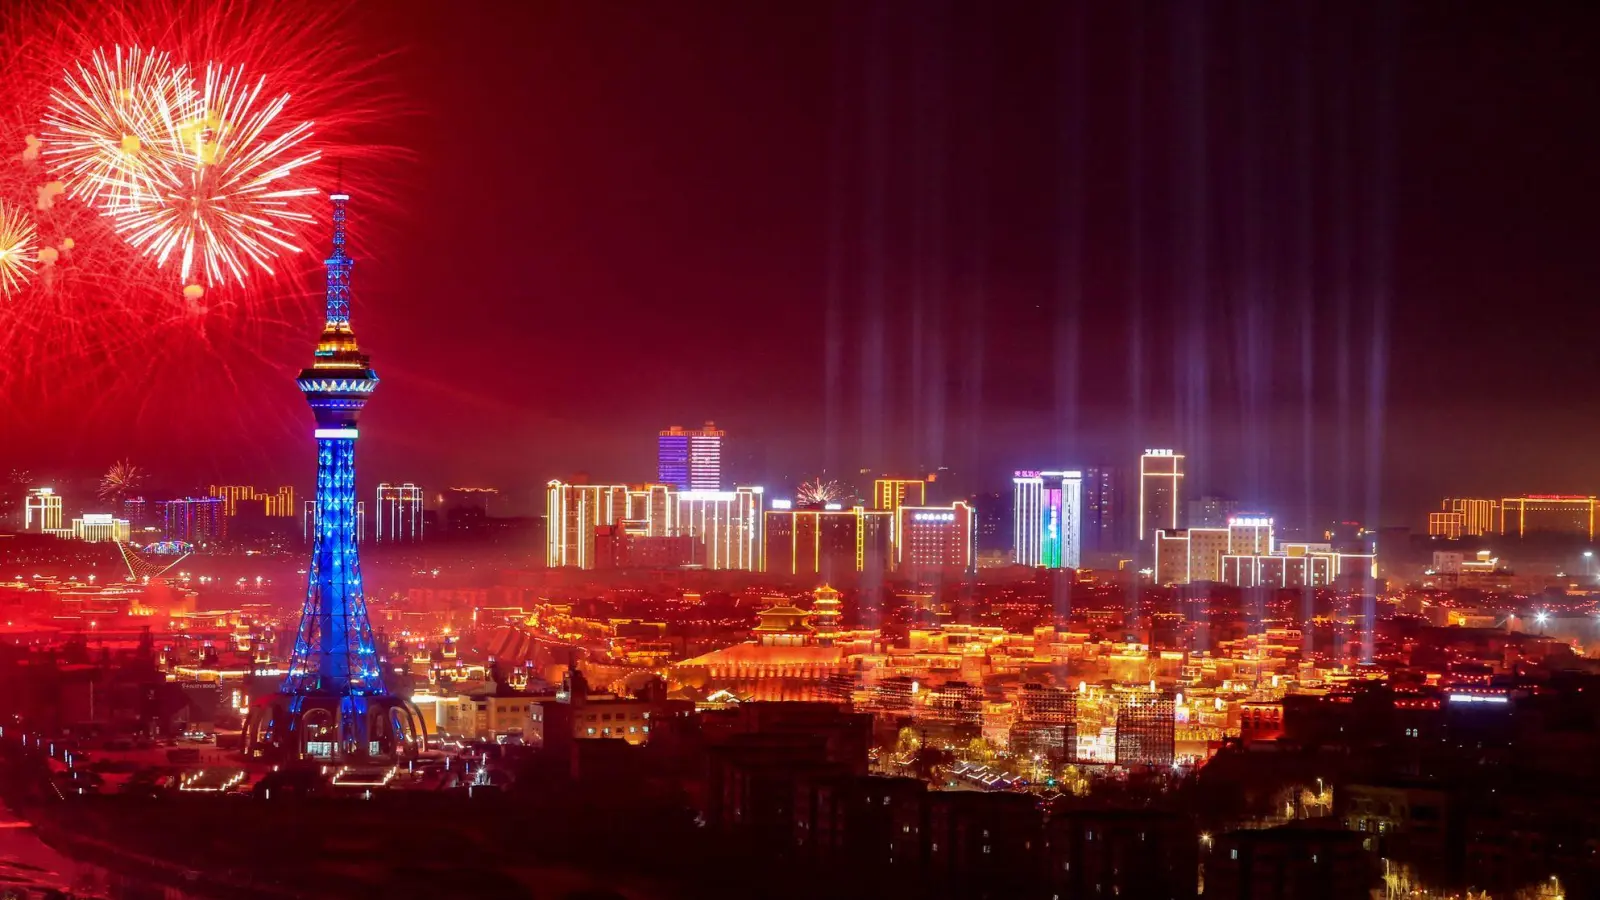 Ein Feuerwerk explodiert am Nachthimmel von Kashgar im nordwestchinesischen Autonomen Gebiet Xinjiang Uygur. (Foto: Cai Zengle/XinHua/dpa)